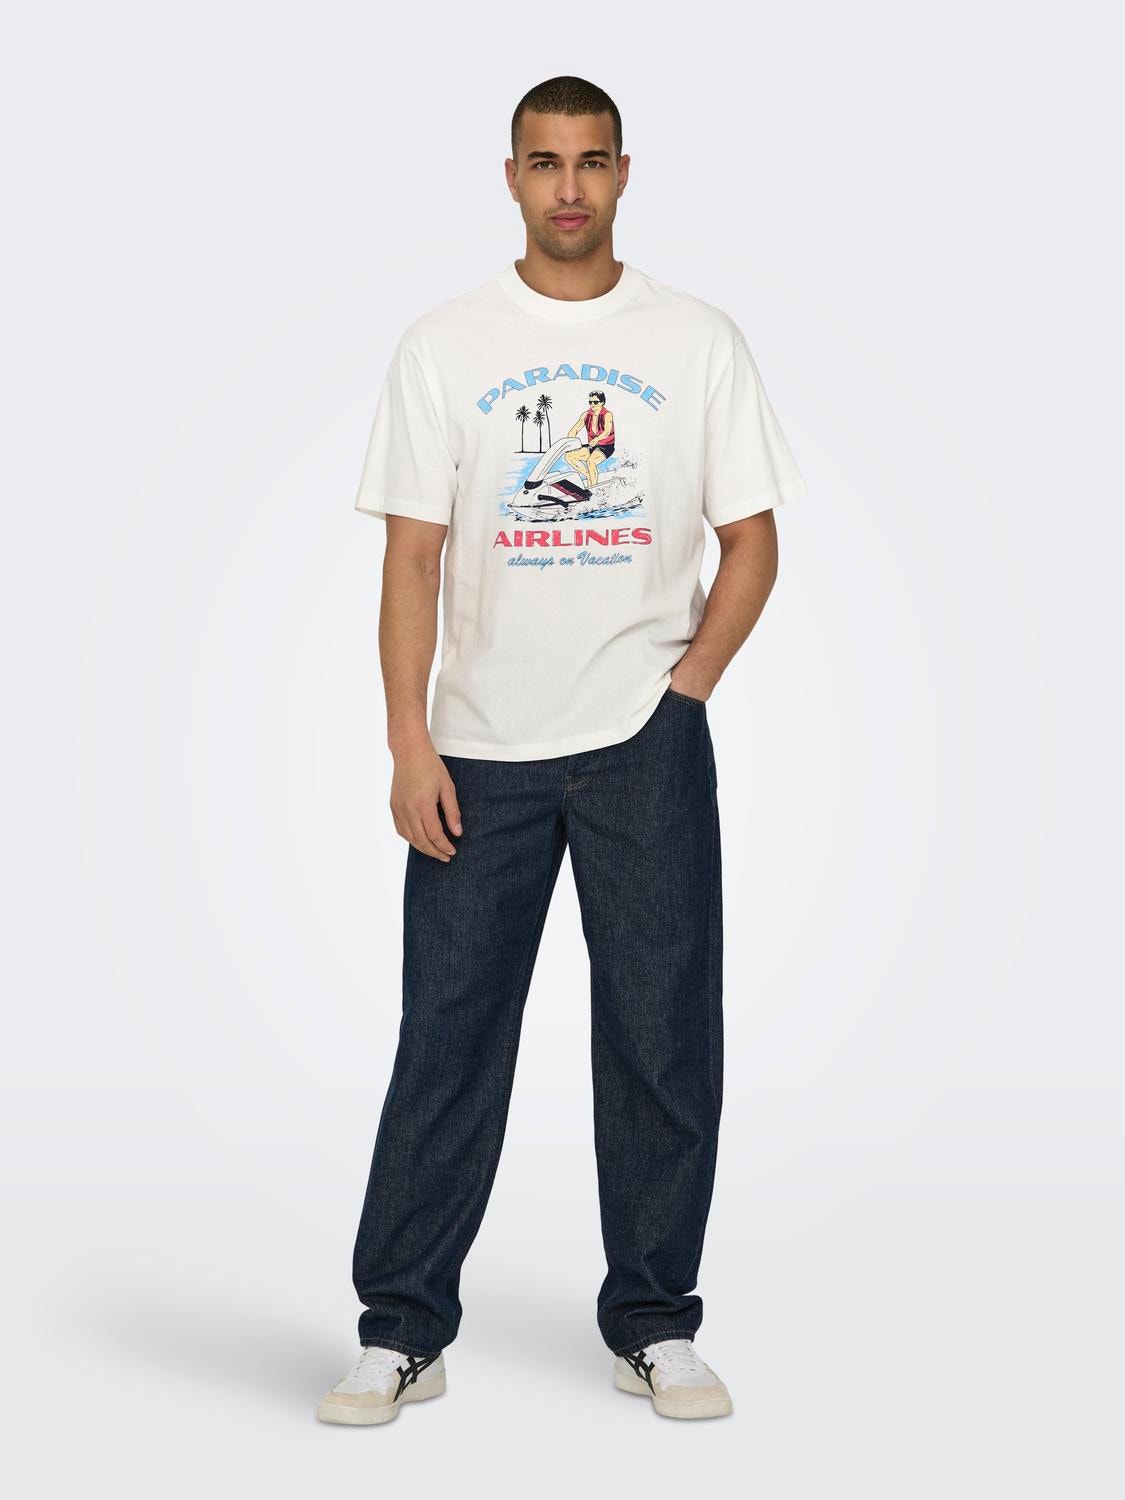 ONLY & SONS Locker geschnitten Rundhals T-Shirt -Cloud Dancer - 22029435